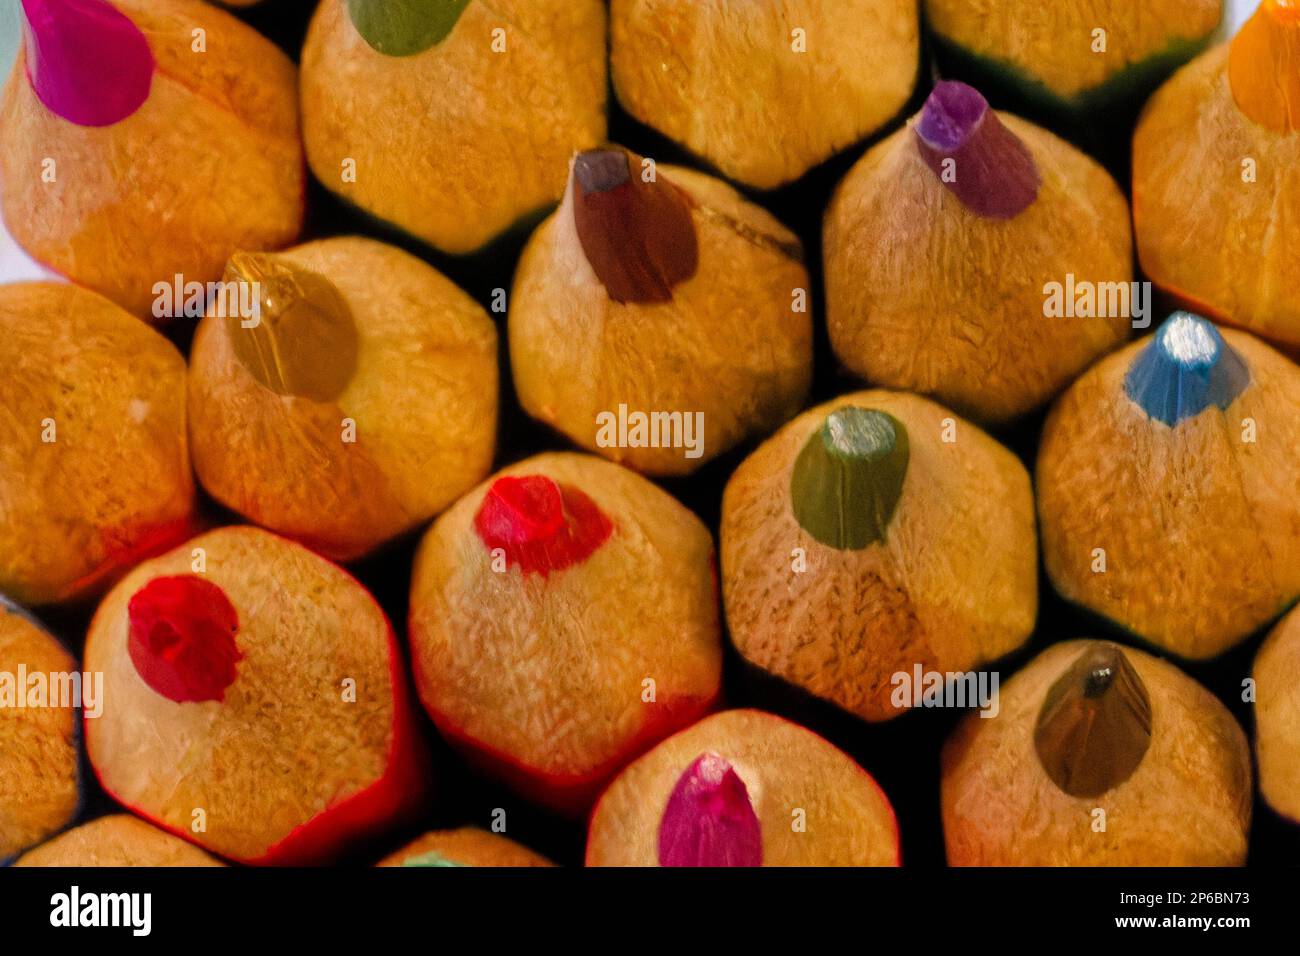 Bleistiftspitzen für eine farbenfrohe Makroaufnahme zur Aufhellung von Aufnahmen oder künstlerischen Zwecken Stockfoto